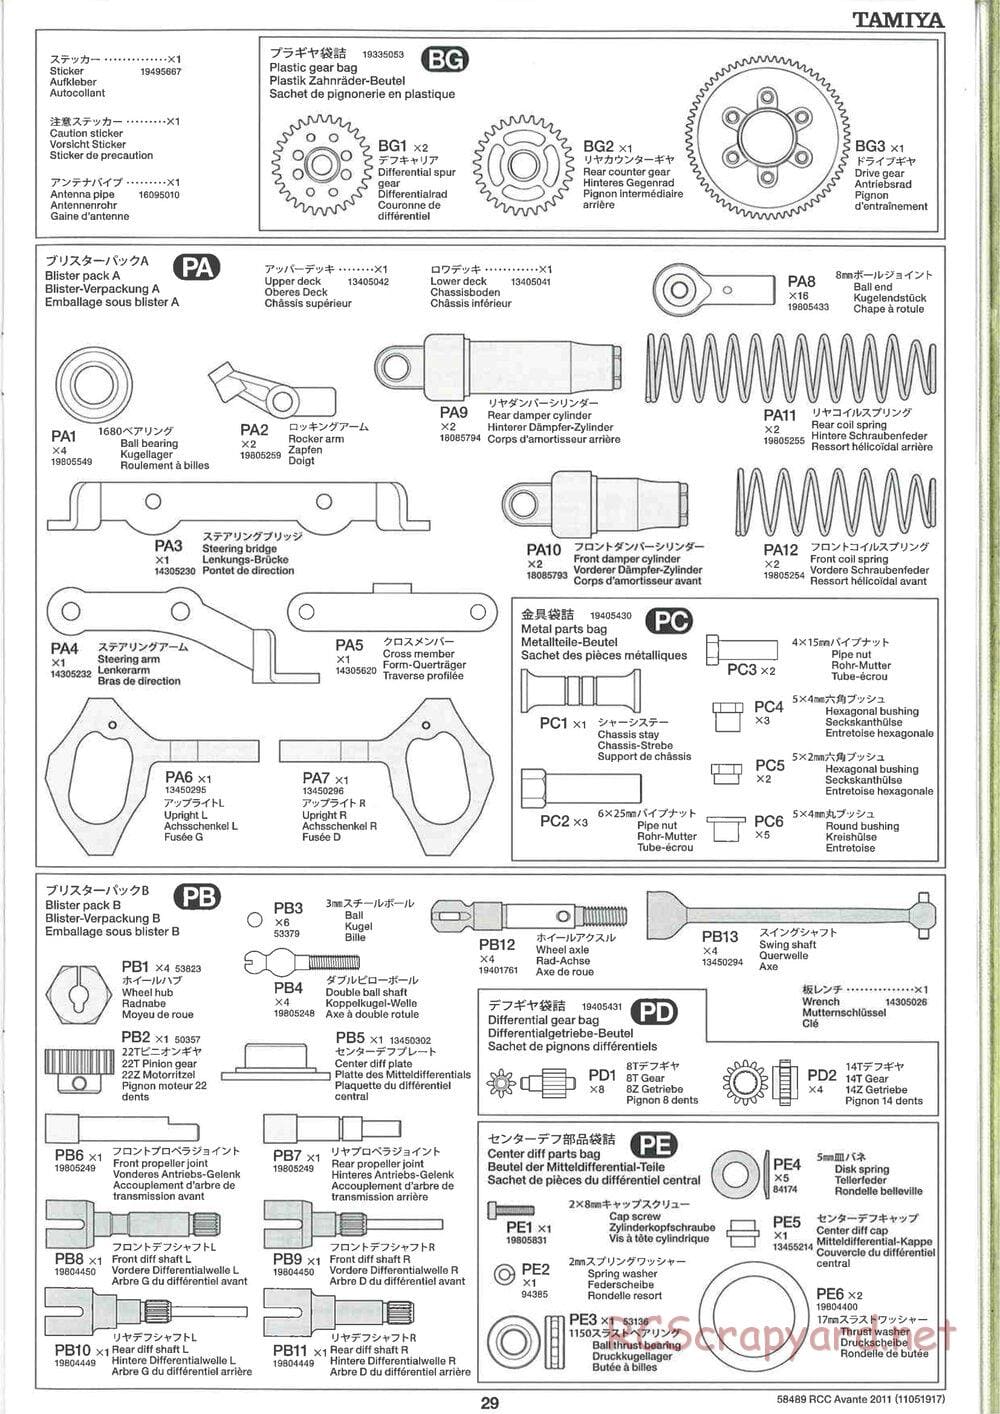 Tamiya - Avante 2011 - AV Chassis - Manual - Page 29